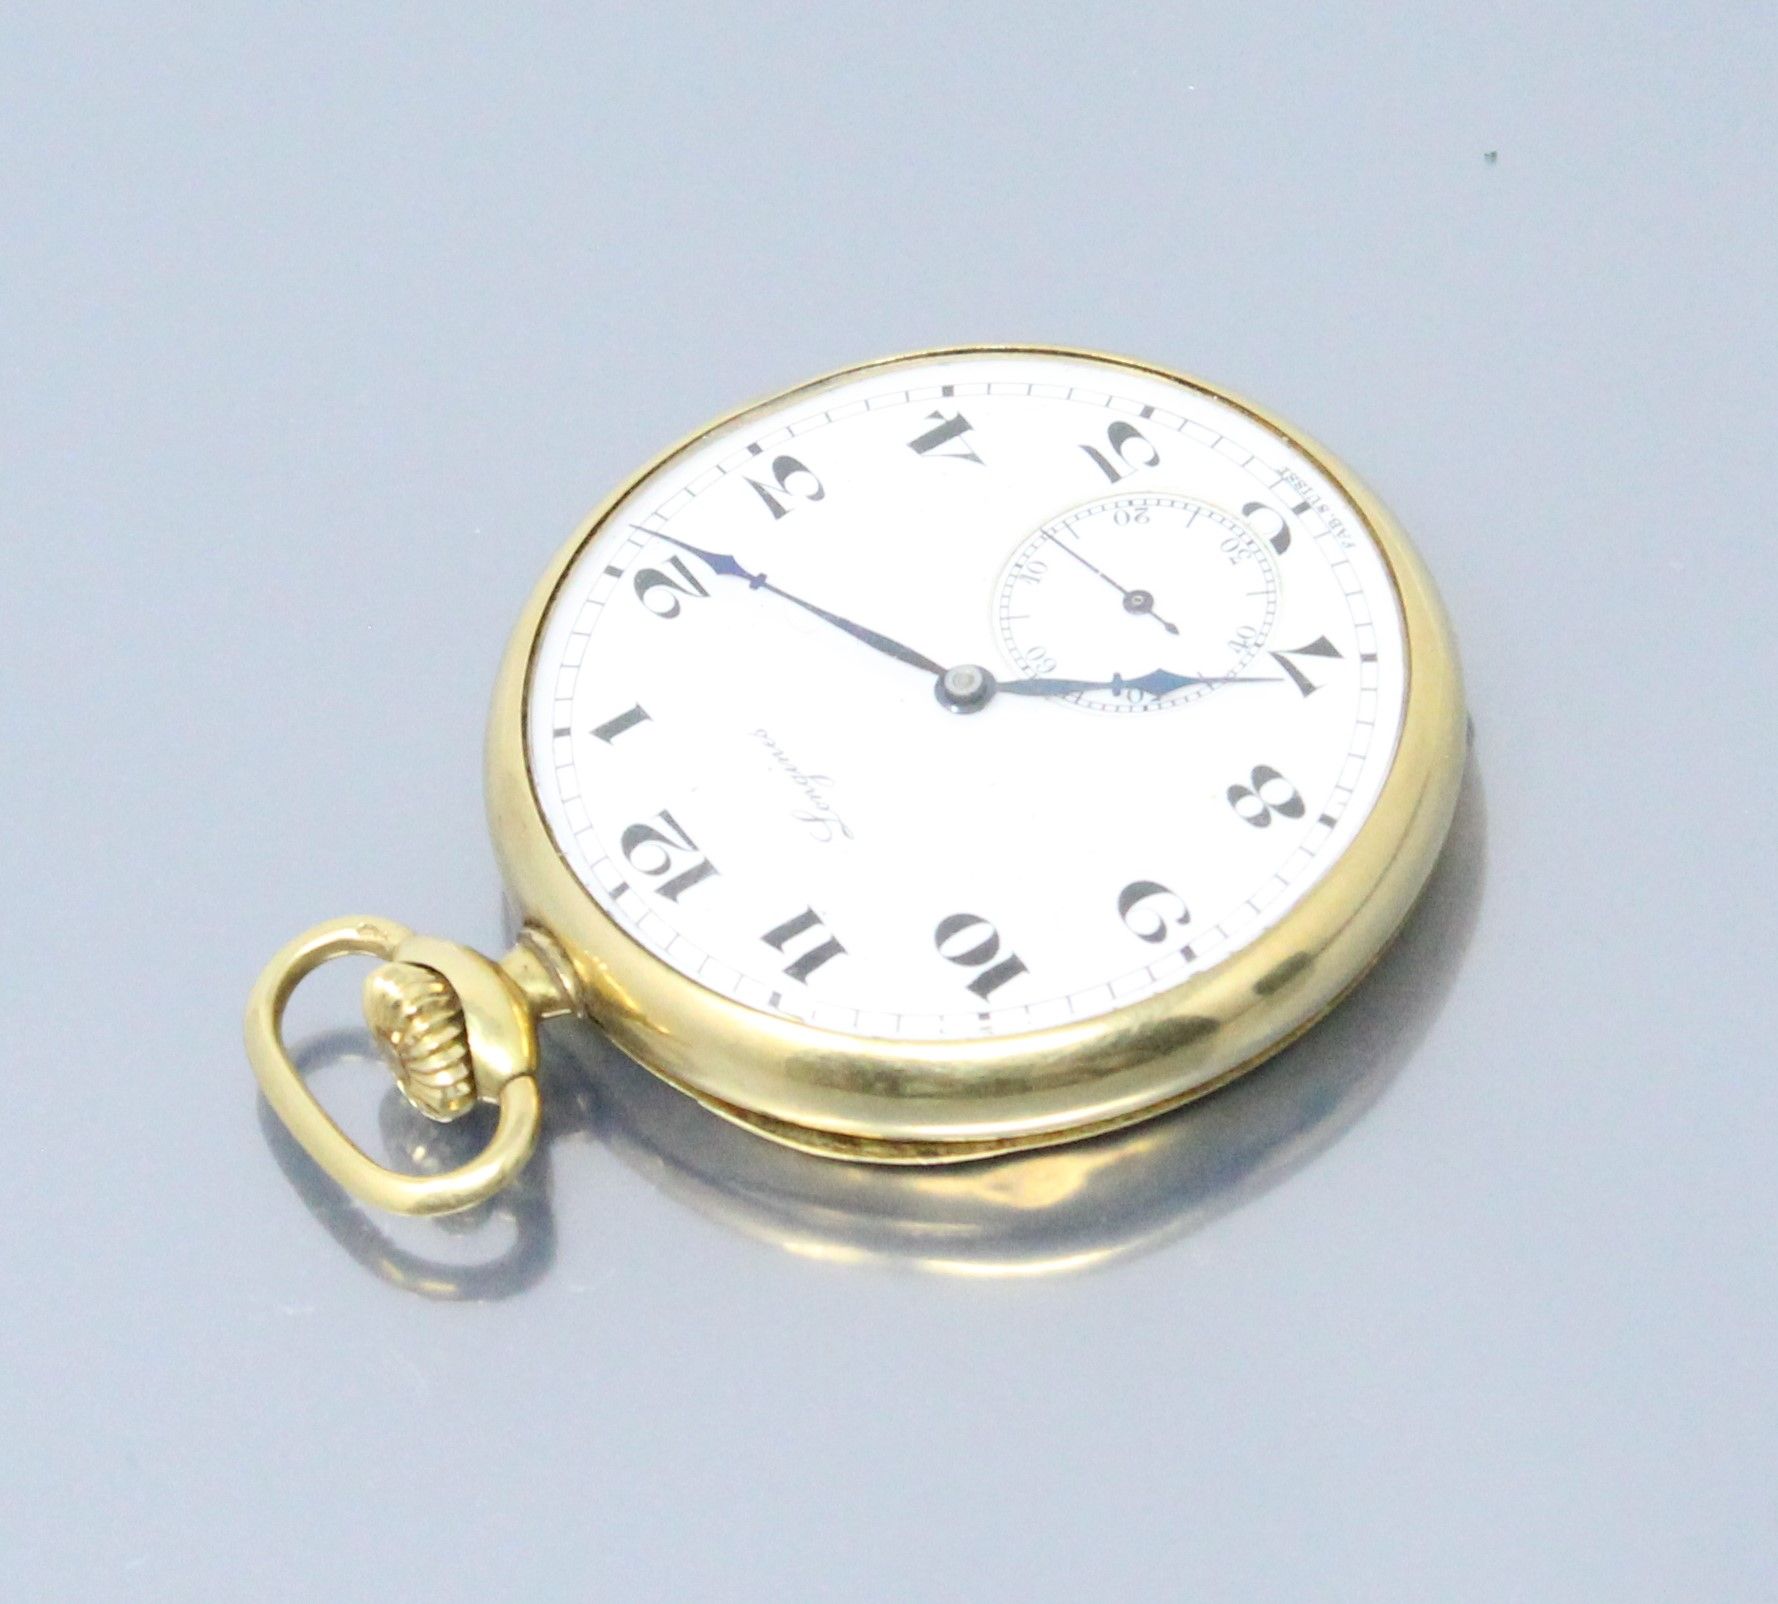 Null 郎咸平

18K（750）黄金怀表。表盘以白色珐琅为背景，小时和分钟为阿拉伯数字。铁路和秒针位于6点钟方向。 

鹰头标志。

直径：45毫米。- 毛&hellip;